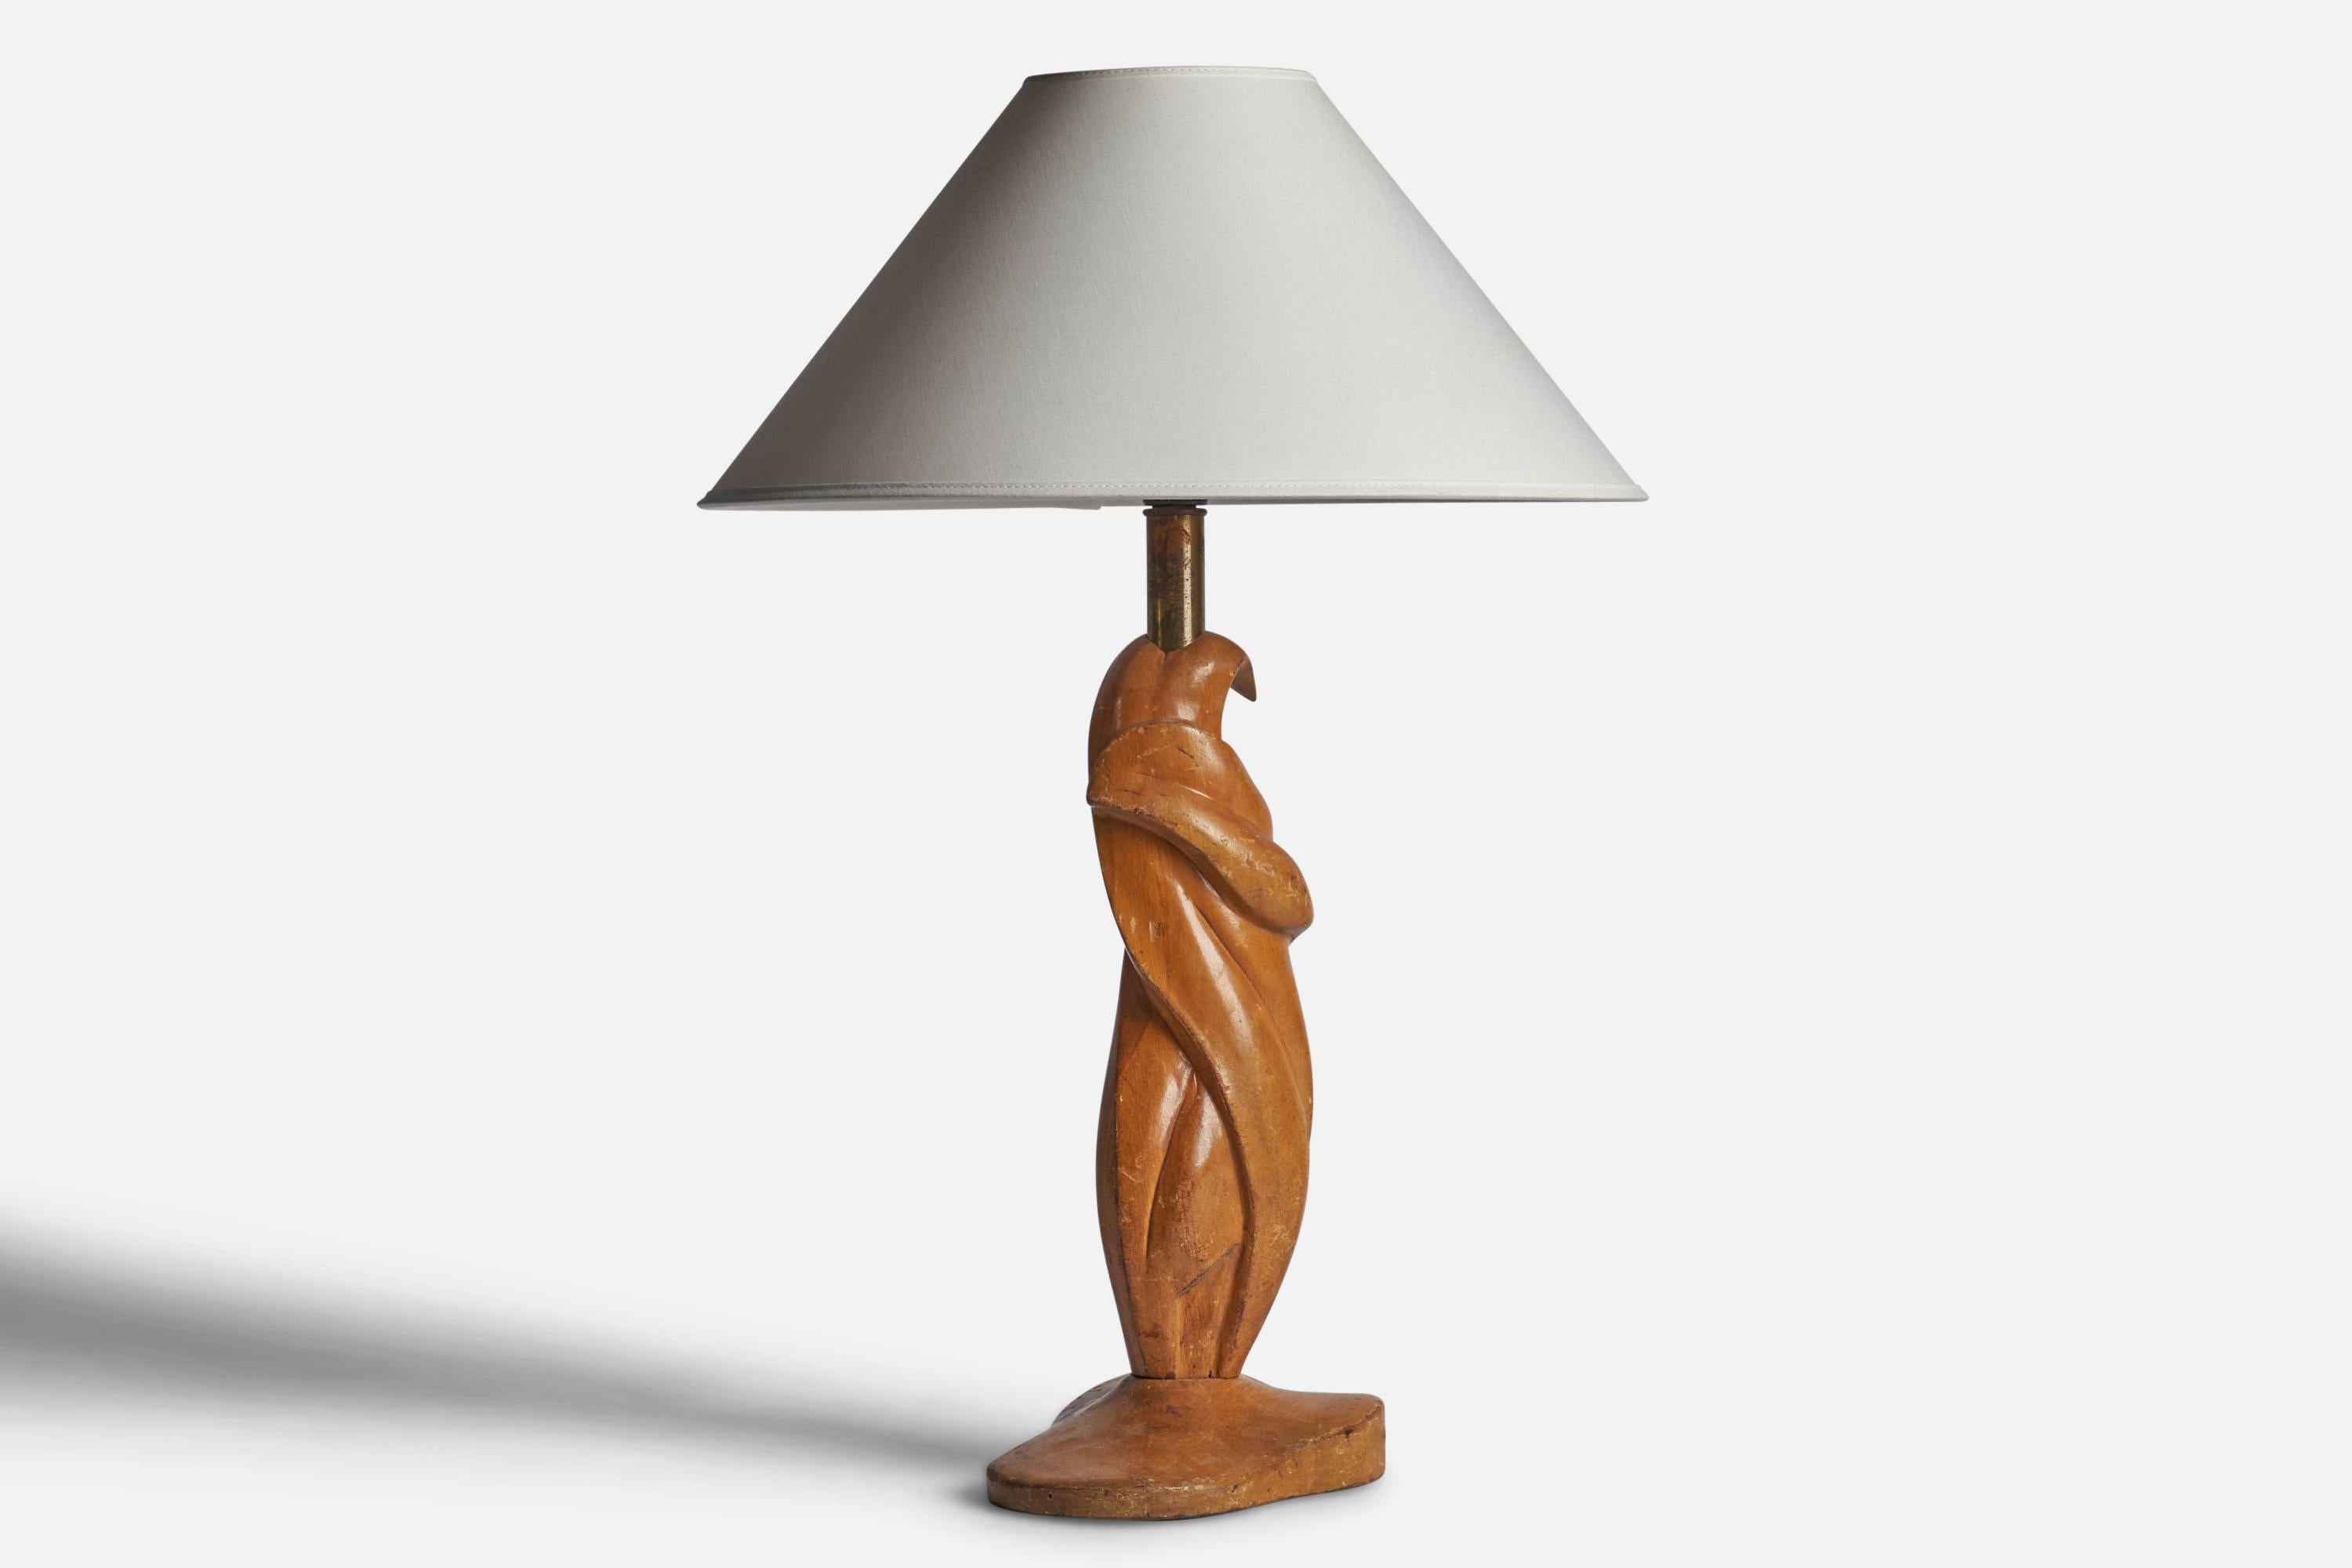 Lampe de table en chêne et en laiton conçue et produite aux États-Unis, années 1950.

Dimensions de la lampe (pouces) : 19.25